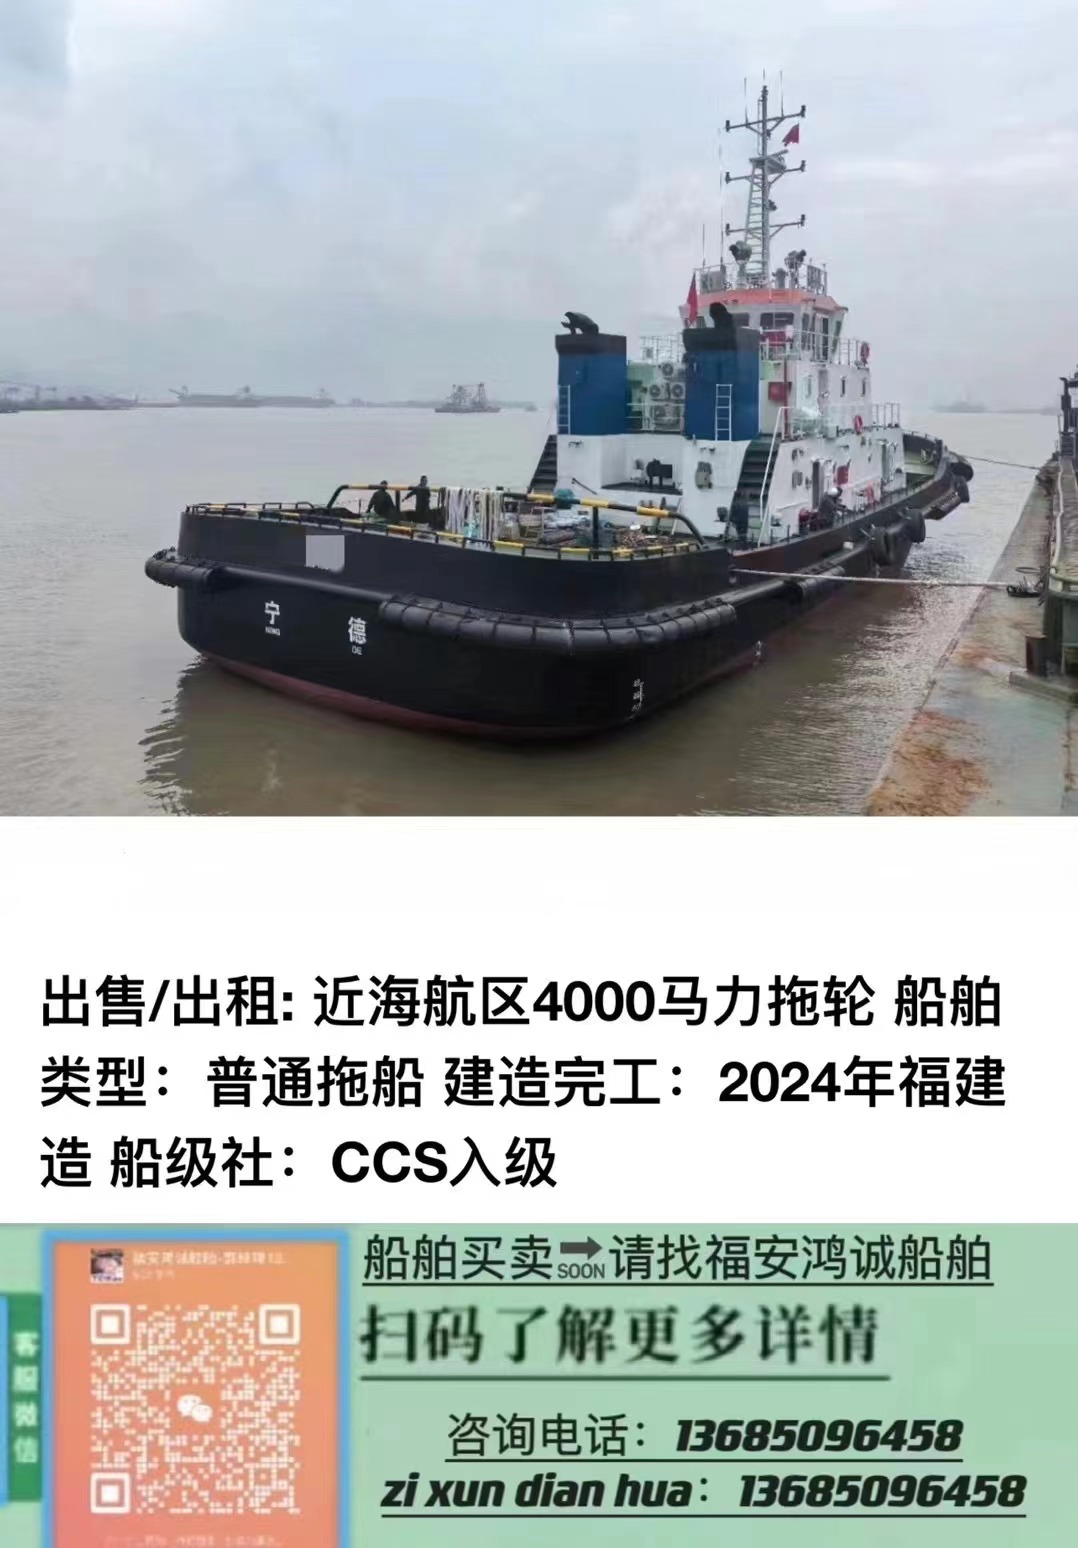 出售/出租: 近海航区4000BHP拖轮 船舶类型：普通拖船 建造完工：2024年福建造 船级社：CCS入级 